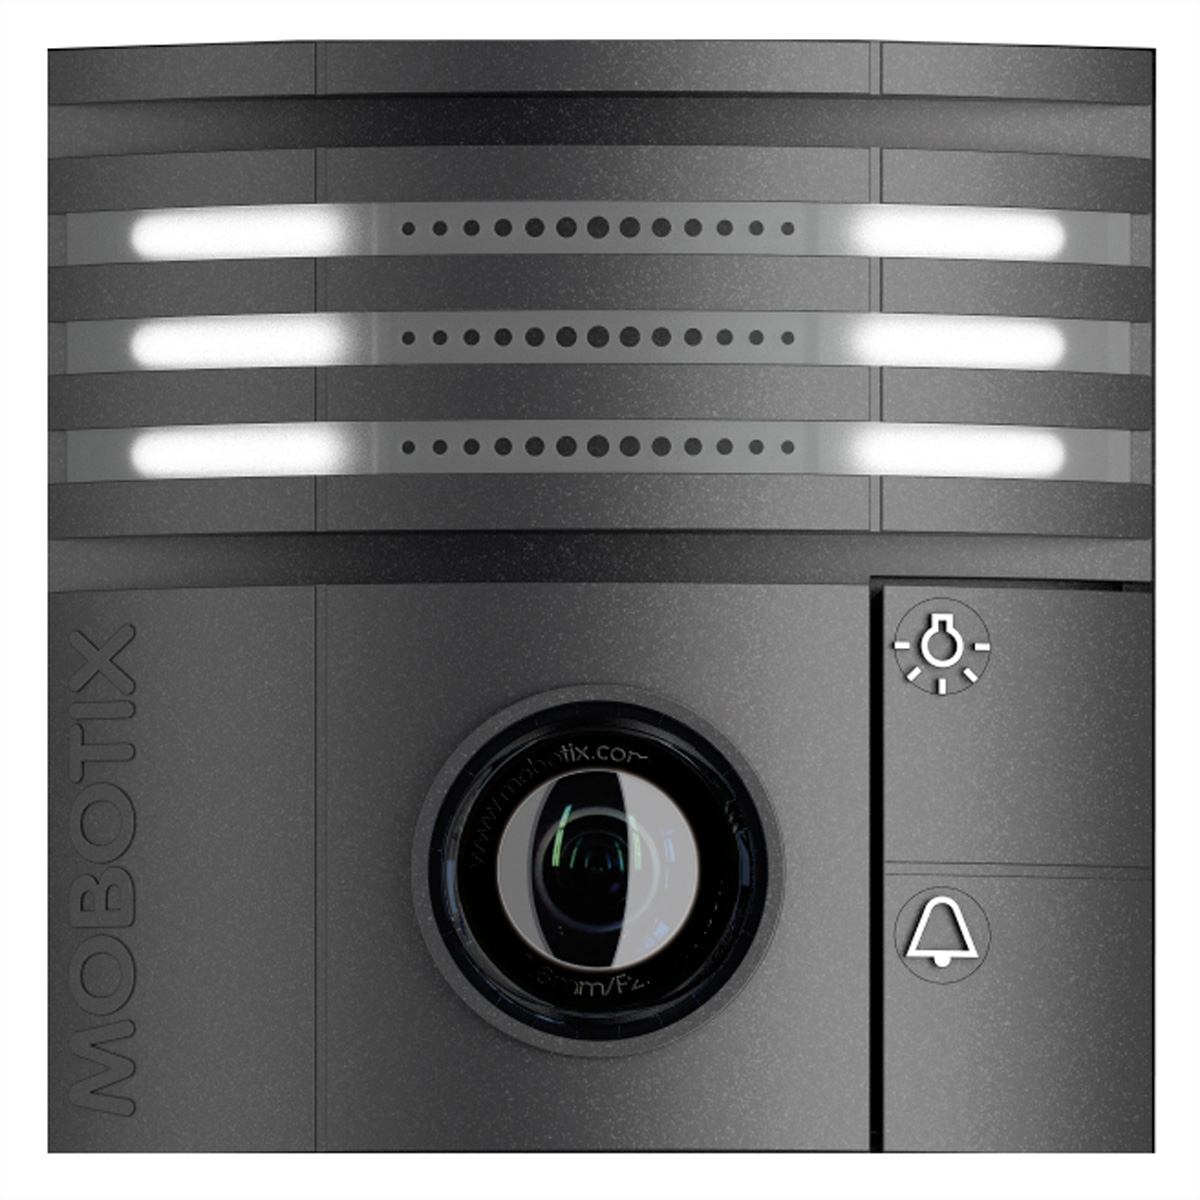 MOBOTIX T26-Kameramodul 6MP mit B016 Objektiv (180° Nacht) dunkelgrau